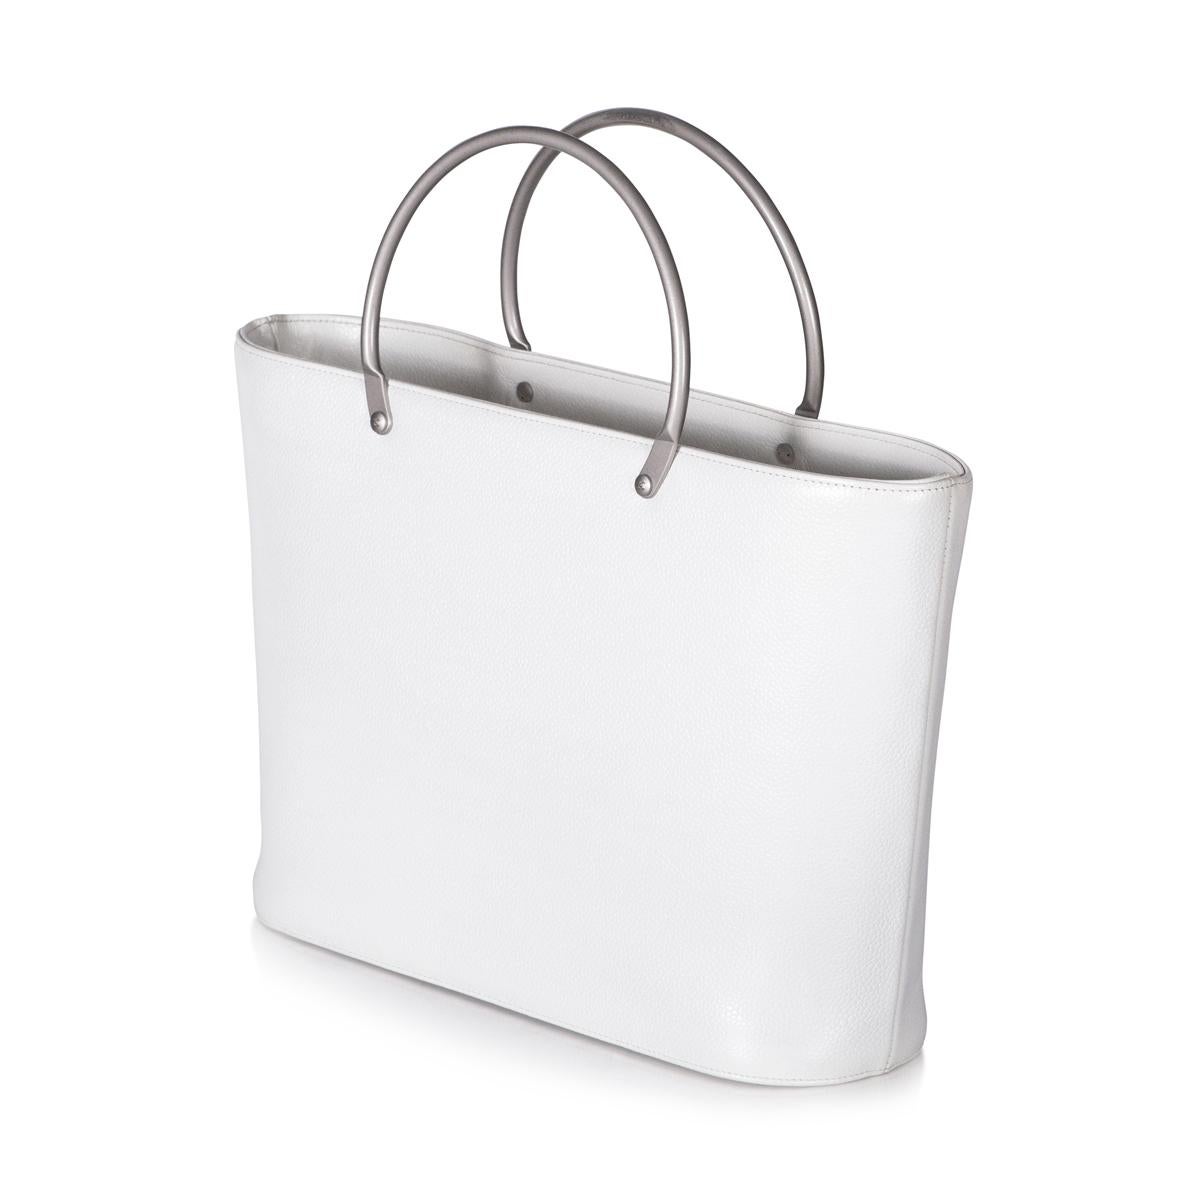 chanel white top handle bag